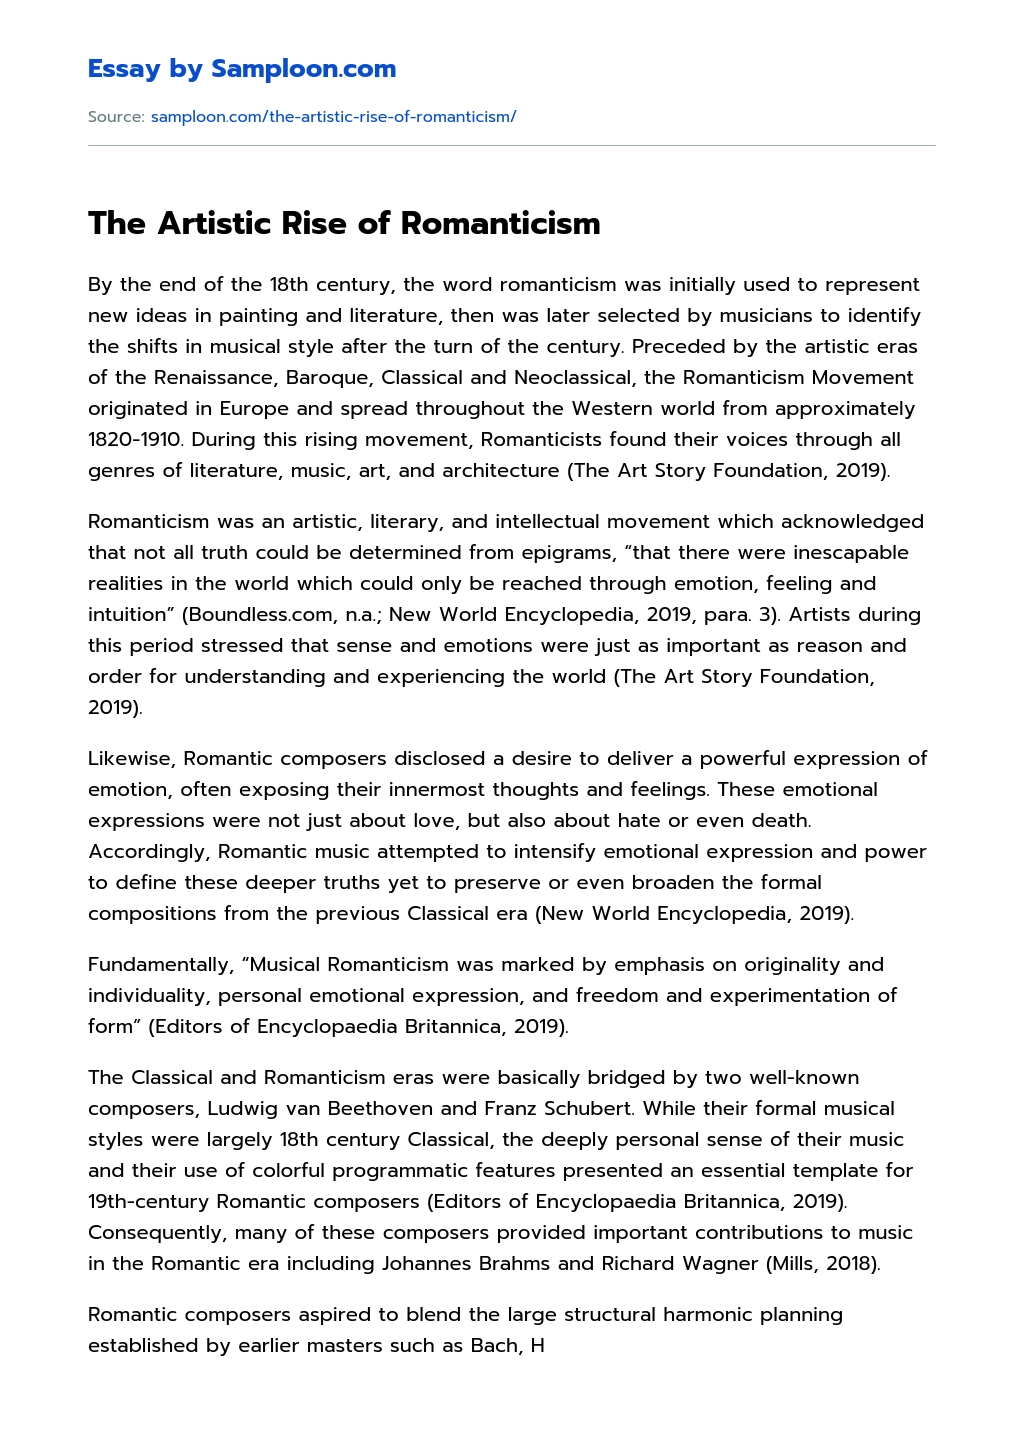 The Artistic Rise of Romanticism essay